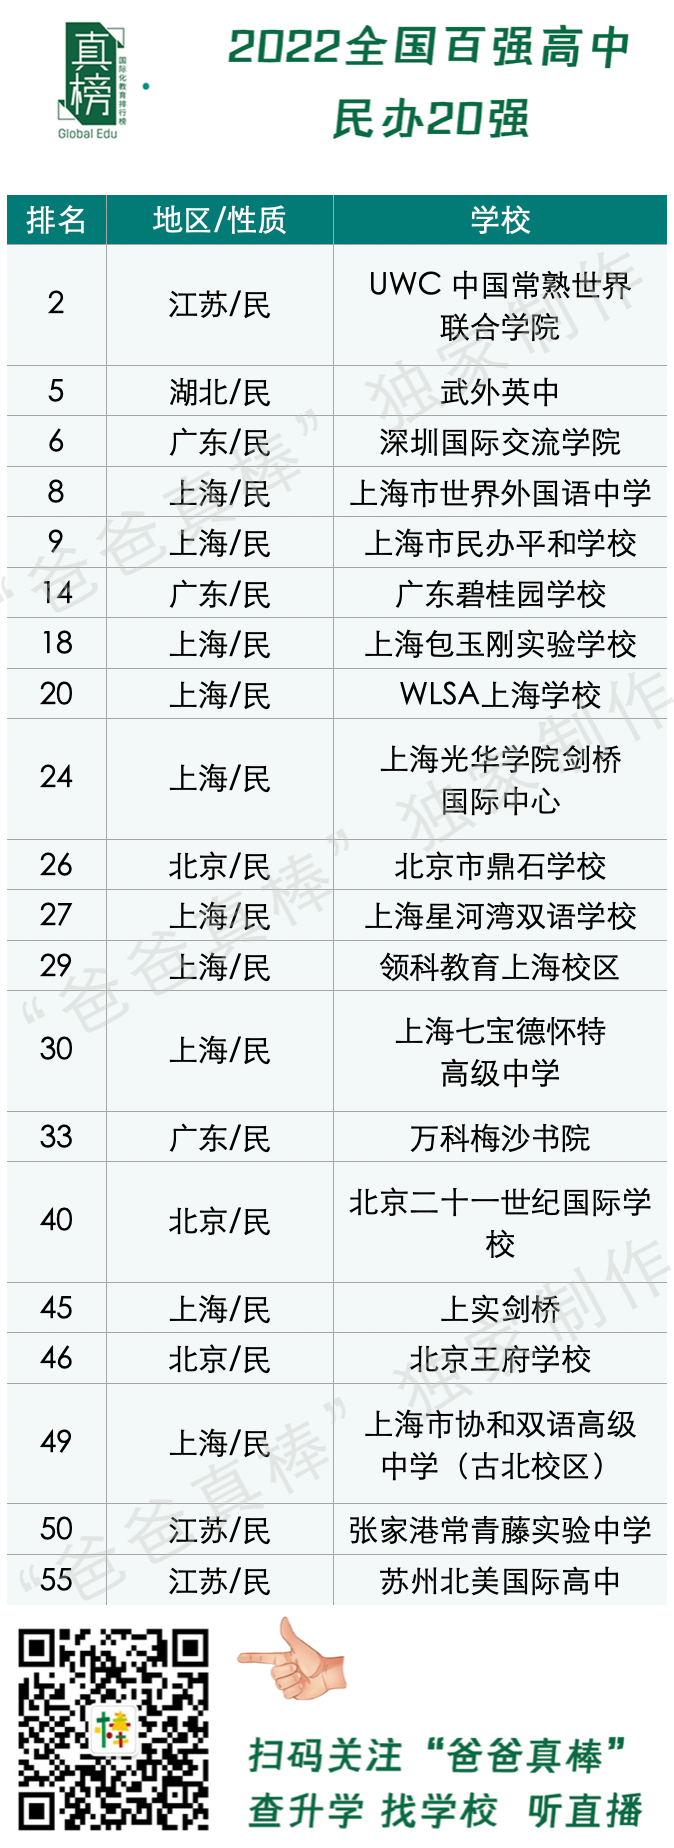 2022中国百强高中海外大学升学榜 - 深国交英方向排名第1 整体排名第6  数据 排名 第13张